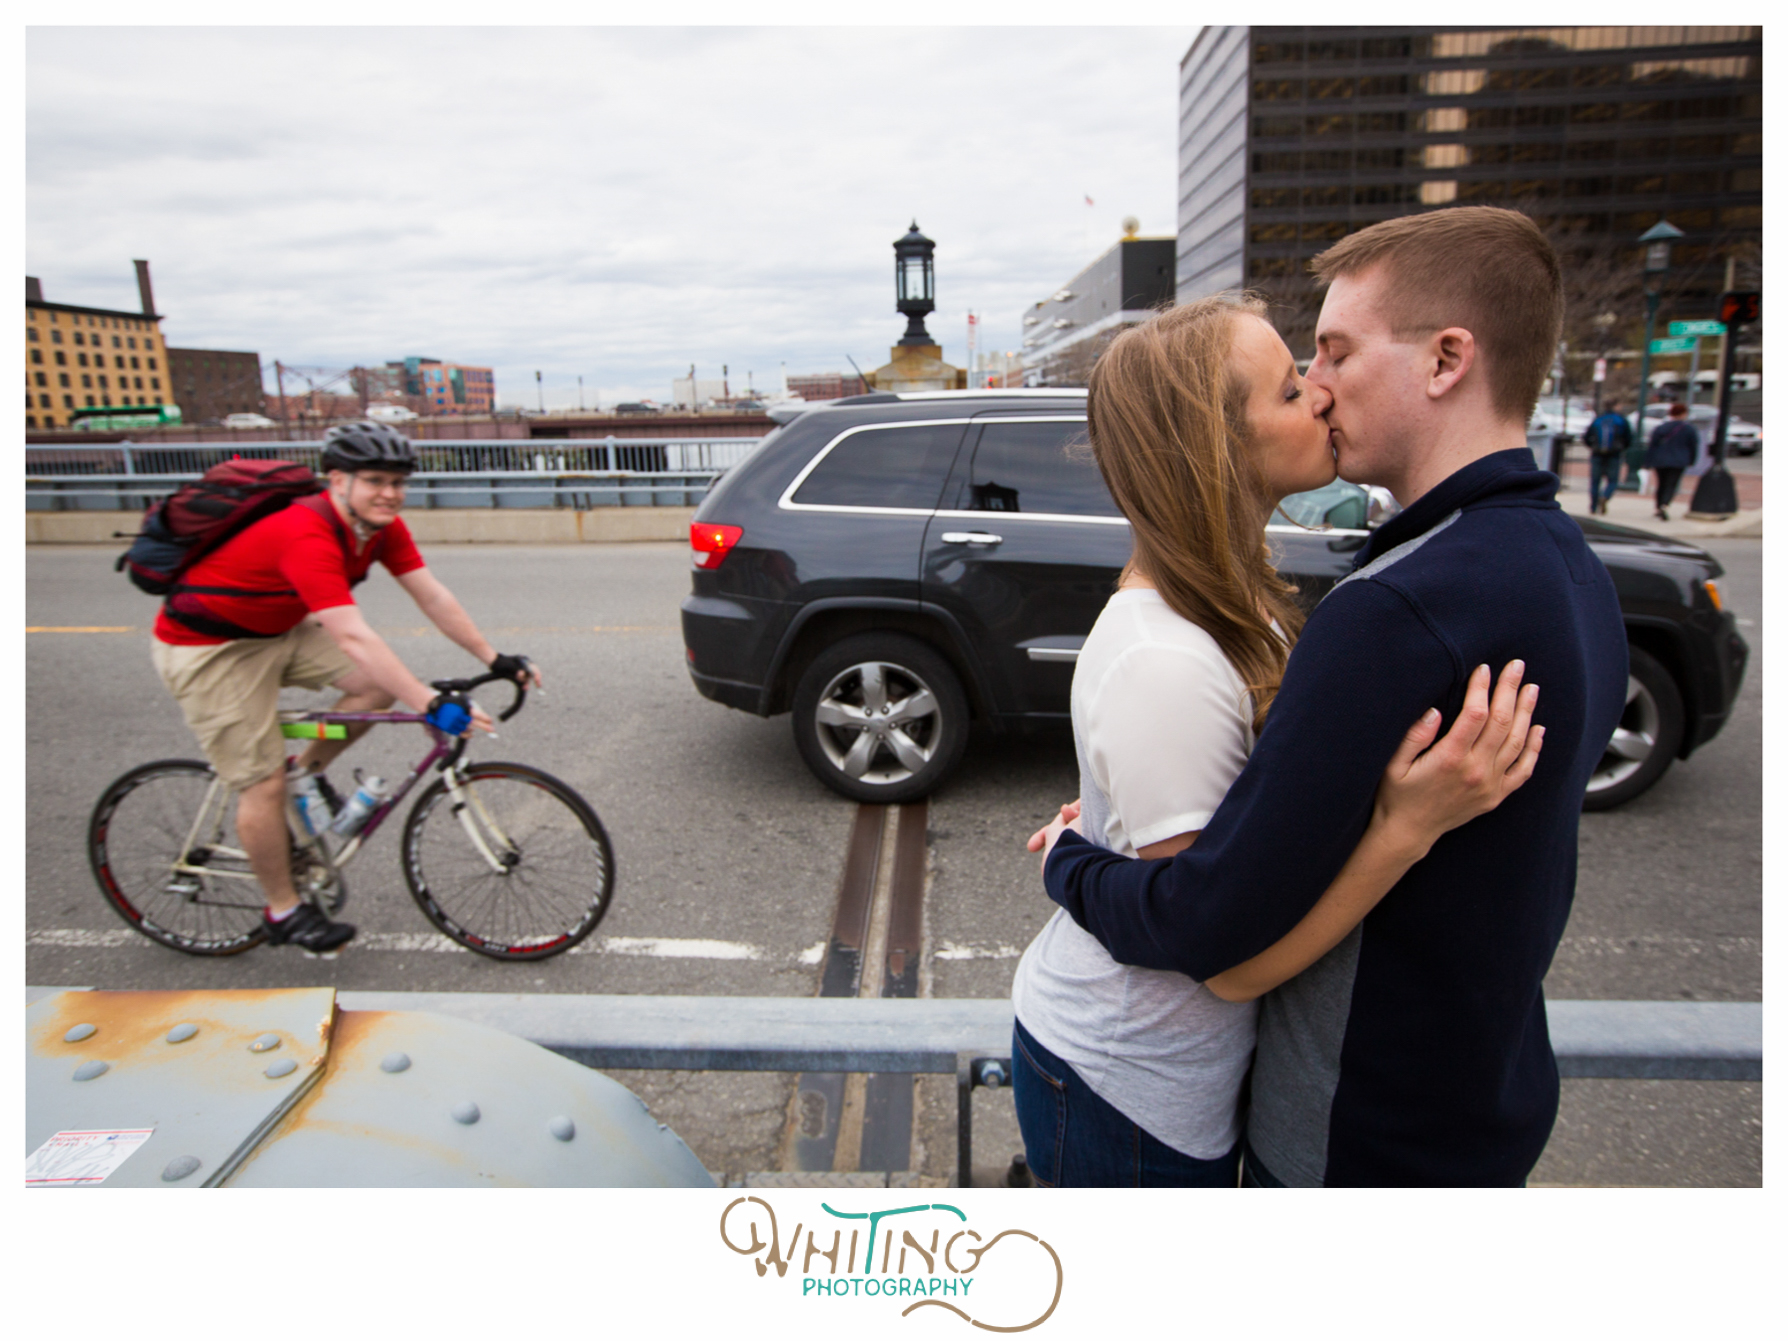 Boston Wedding Photographer | Whiting Photography